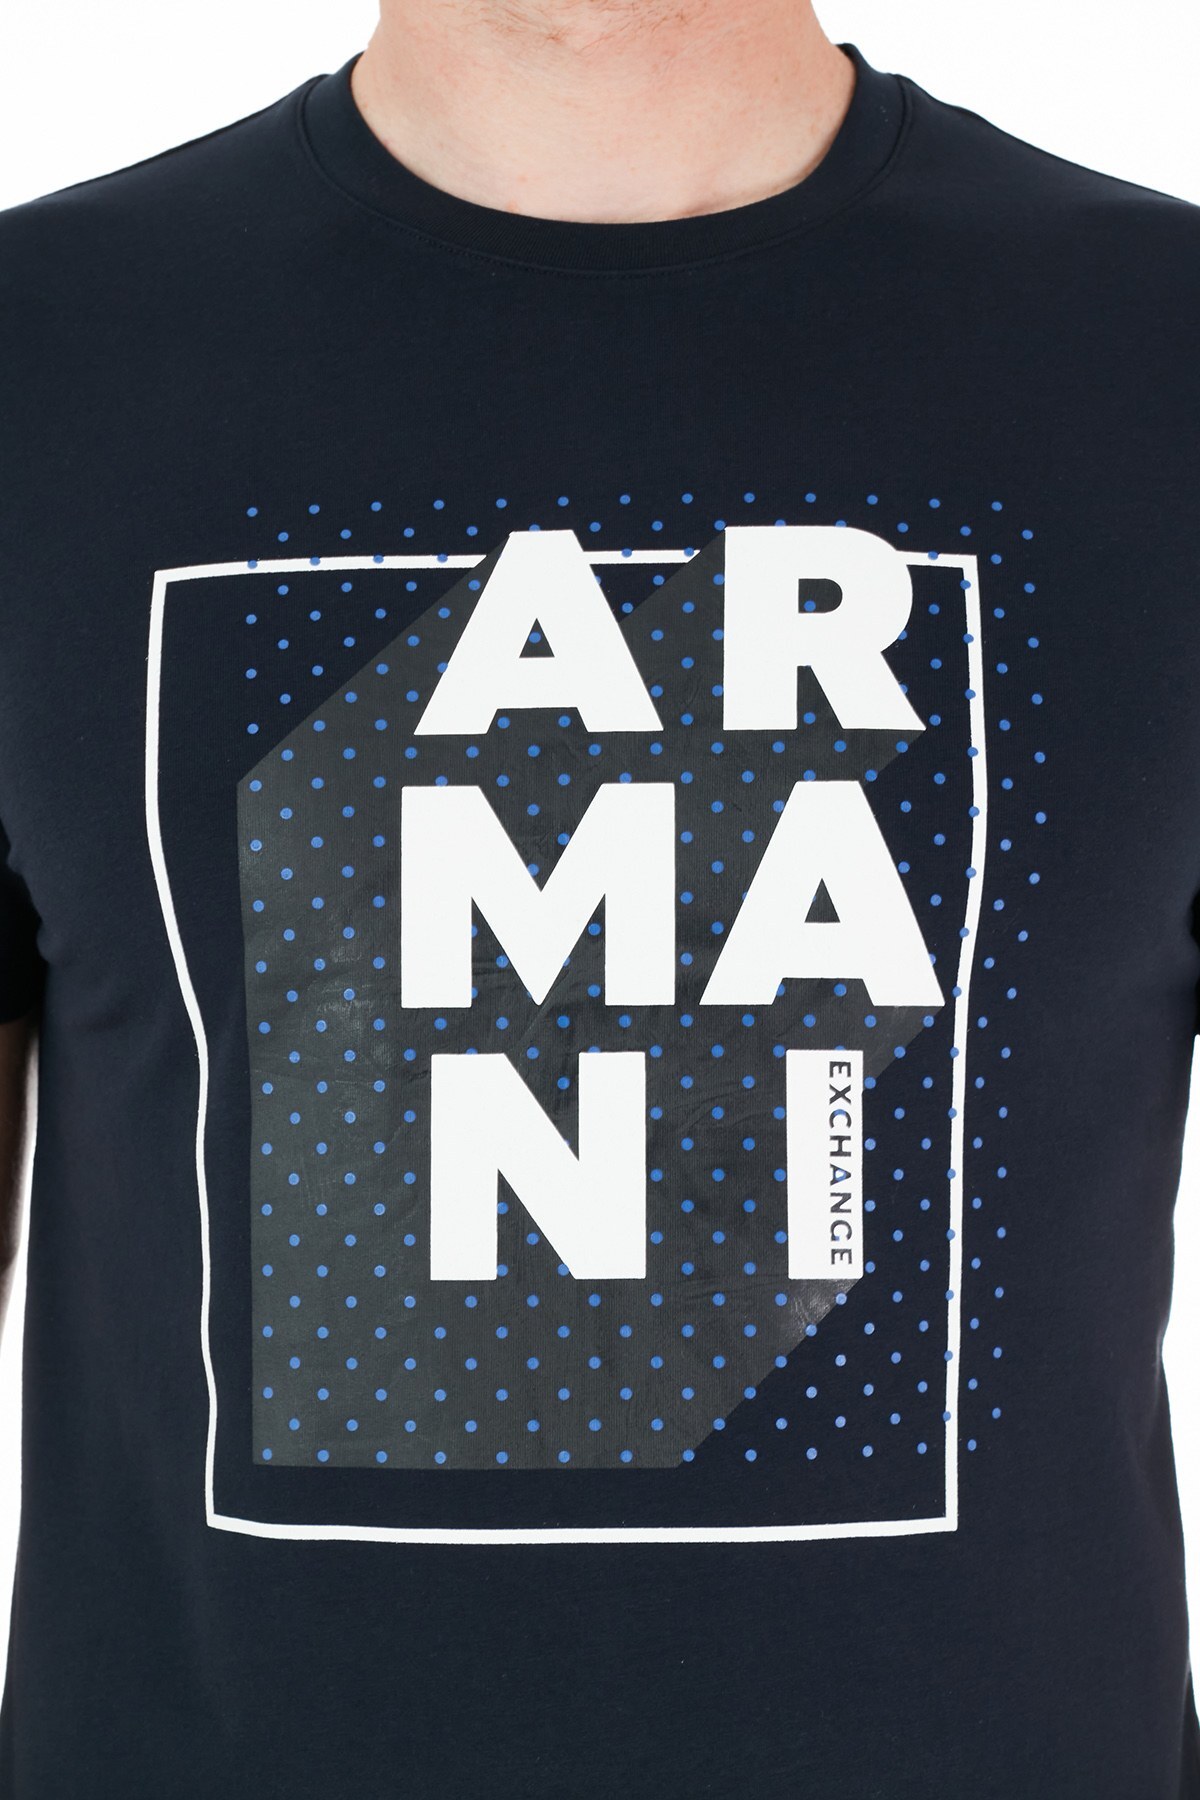 Armani Exchange Pamuklu Bisiklet Yaka Slim Fit Erkek T Shirt 3KZTNC ZJE6Z 1510 LACİVERT